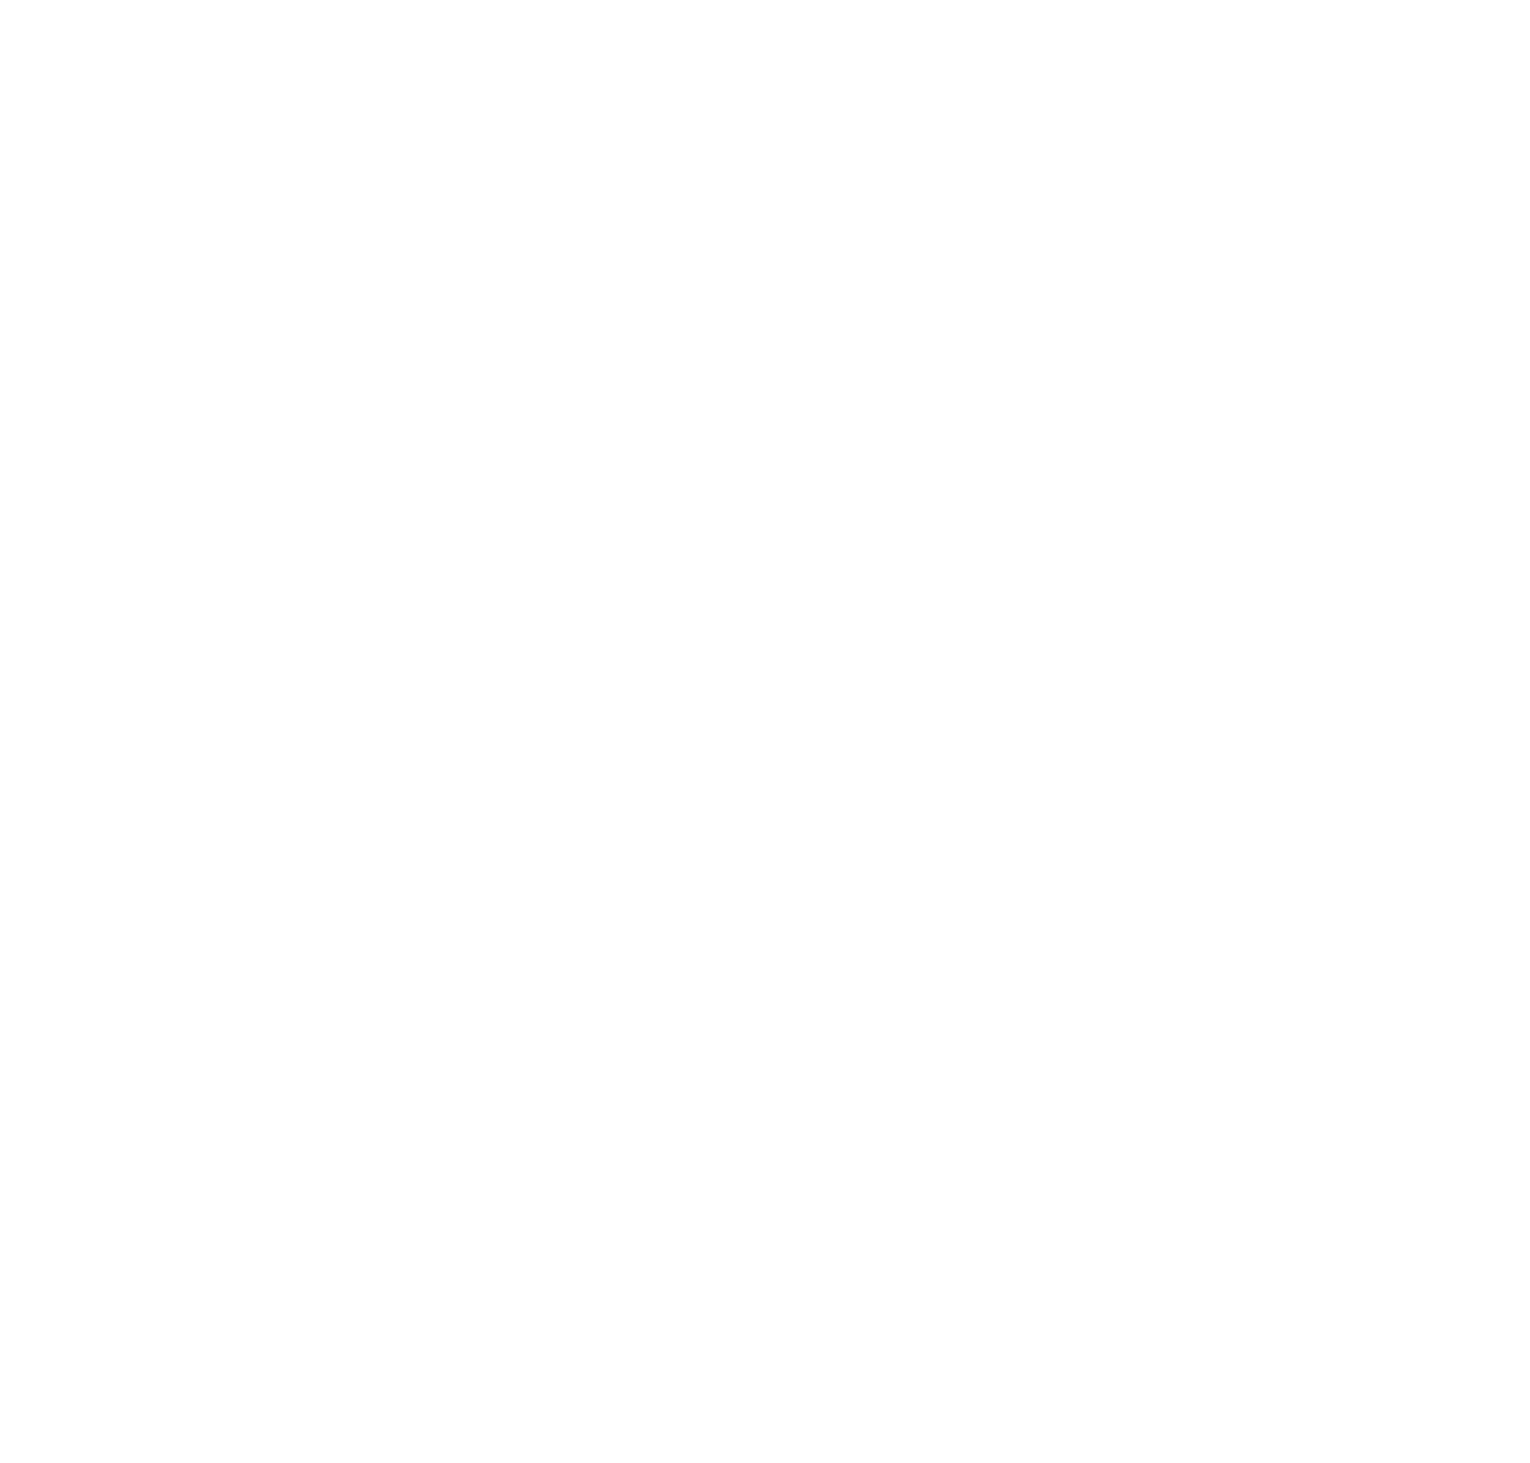 Dave Child's Workshop